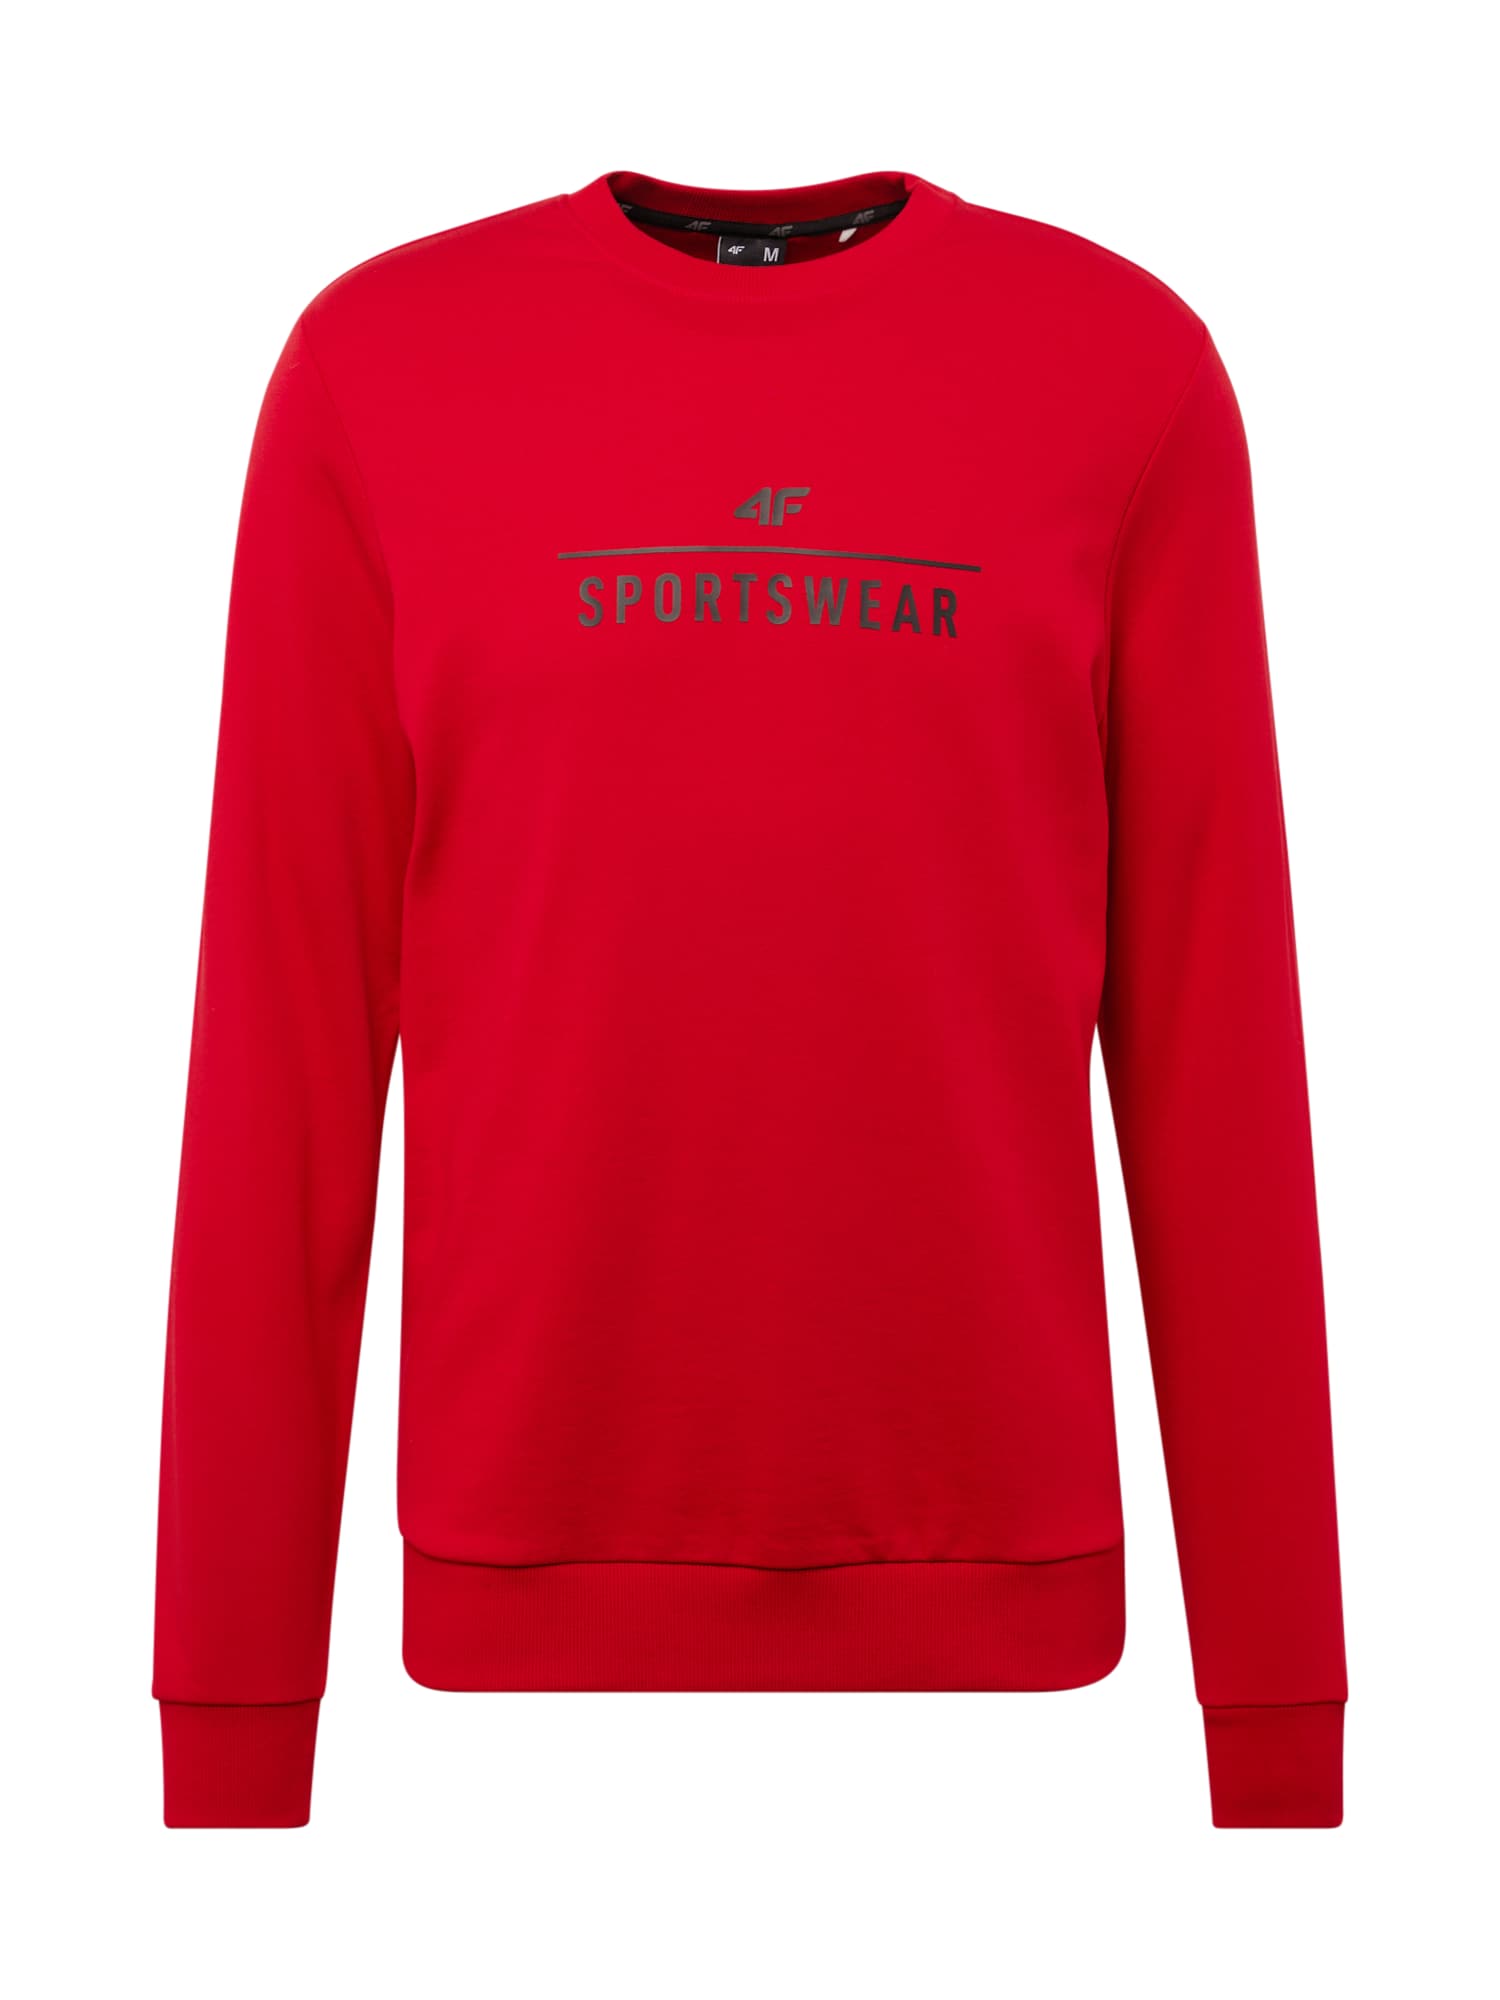 4F Sportska sweater majica  crvena / crna